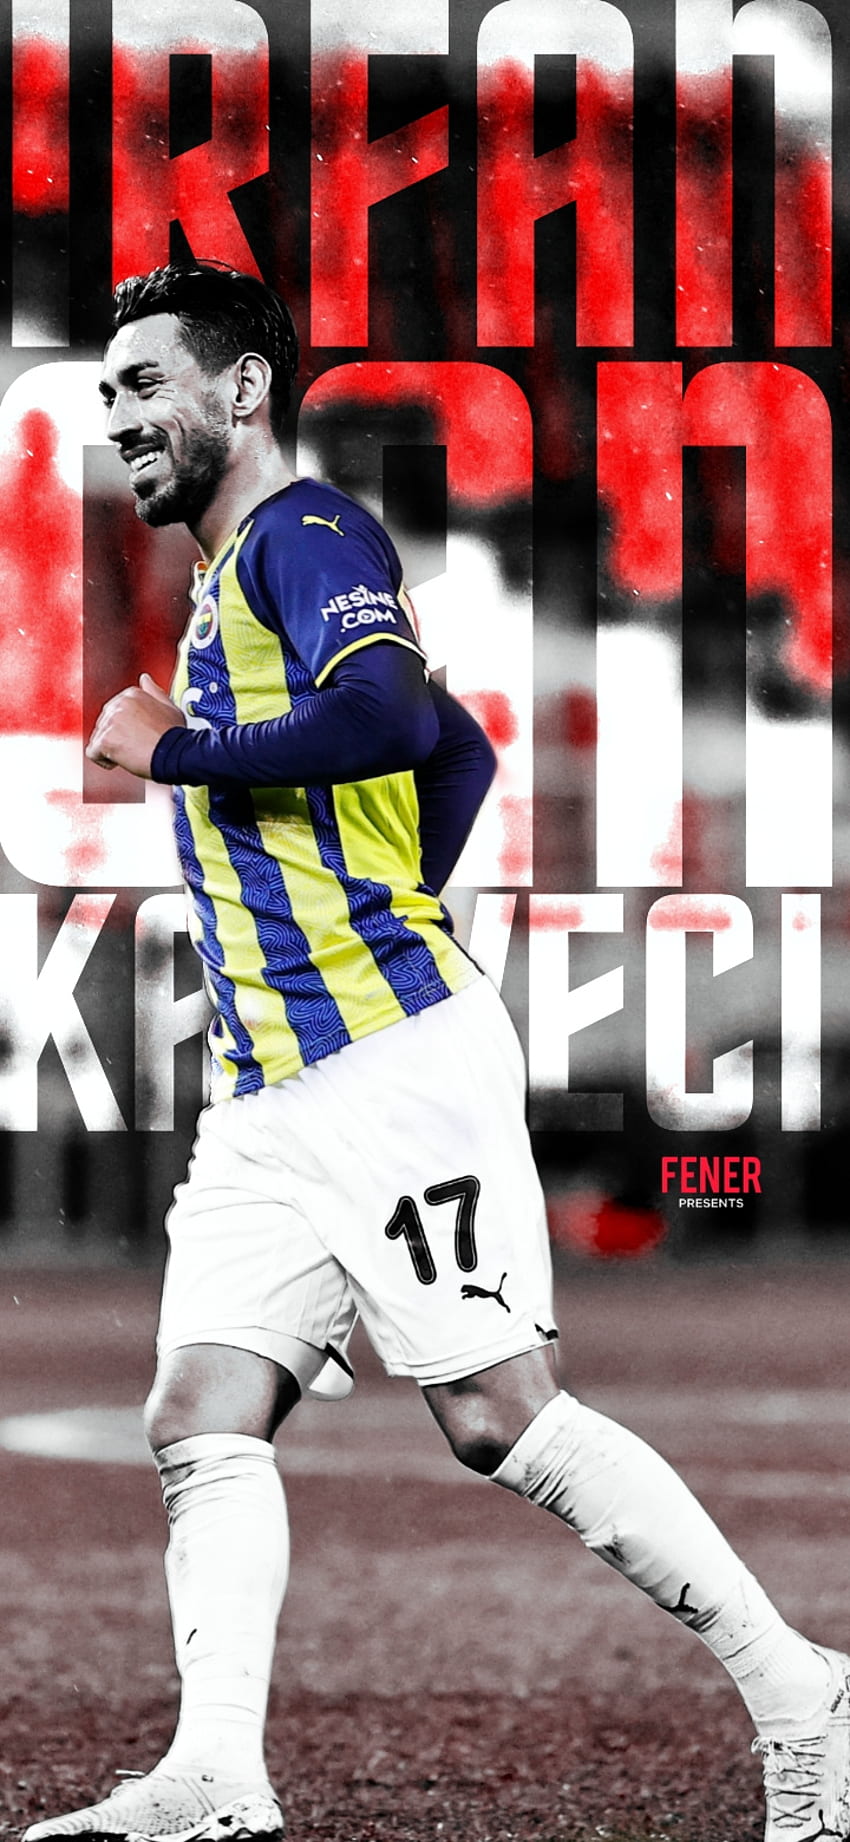 Fenerbahçe, İrfan Can, İrfan Can Kahveci, Fenerbahce, Fenerbahçe HD phone wallpaper